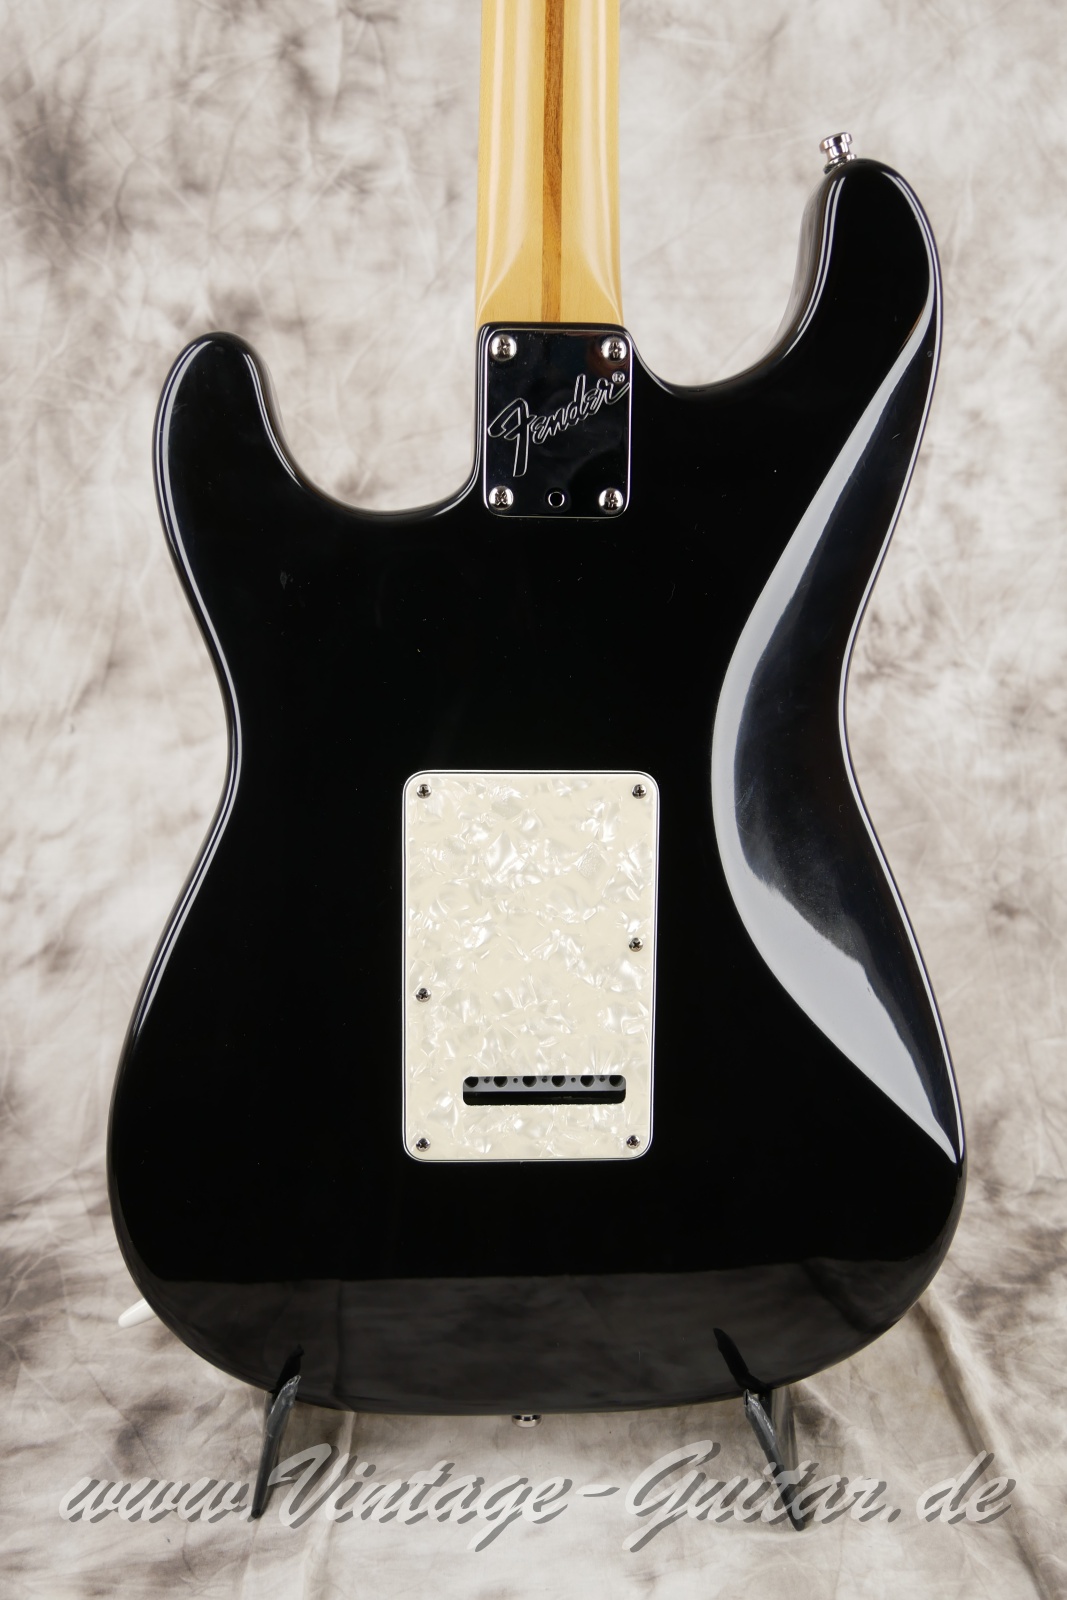 Fender_Stratocaster_US_Lonestar_1997_original_case_black_humbucker-008.jpg